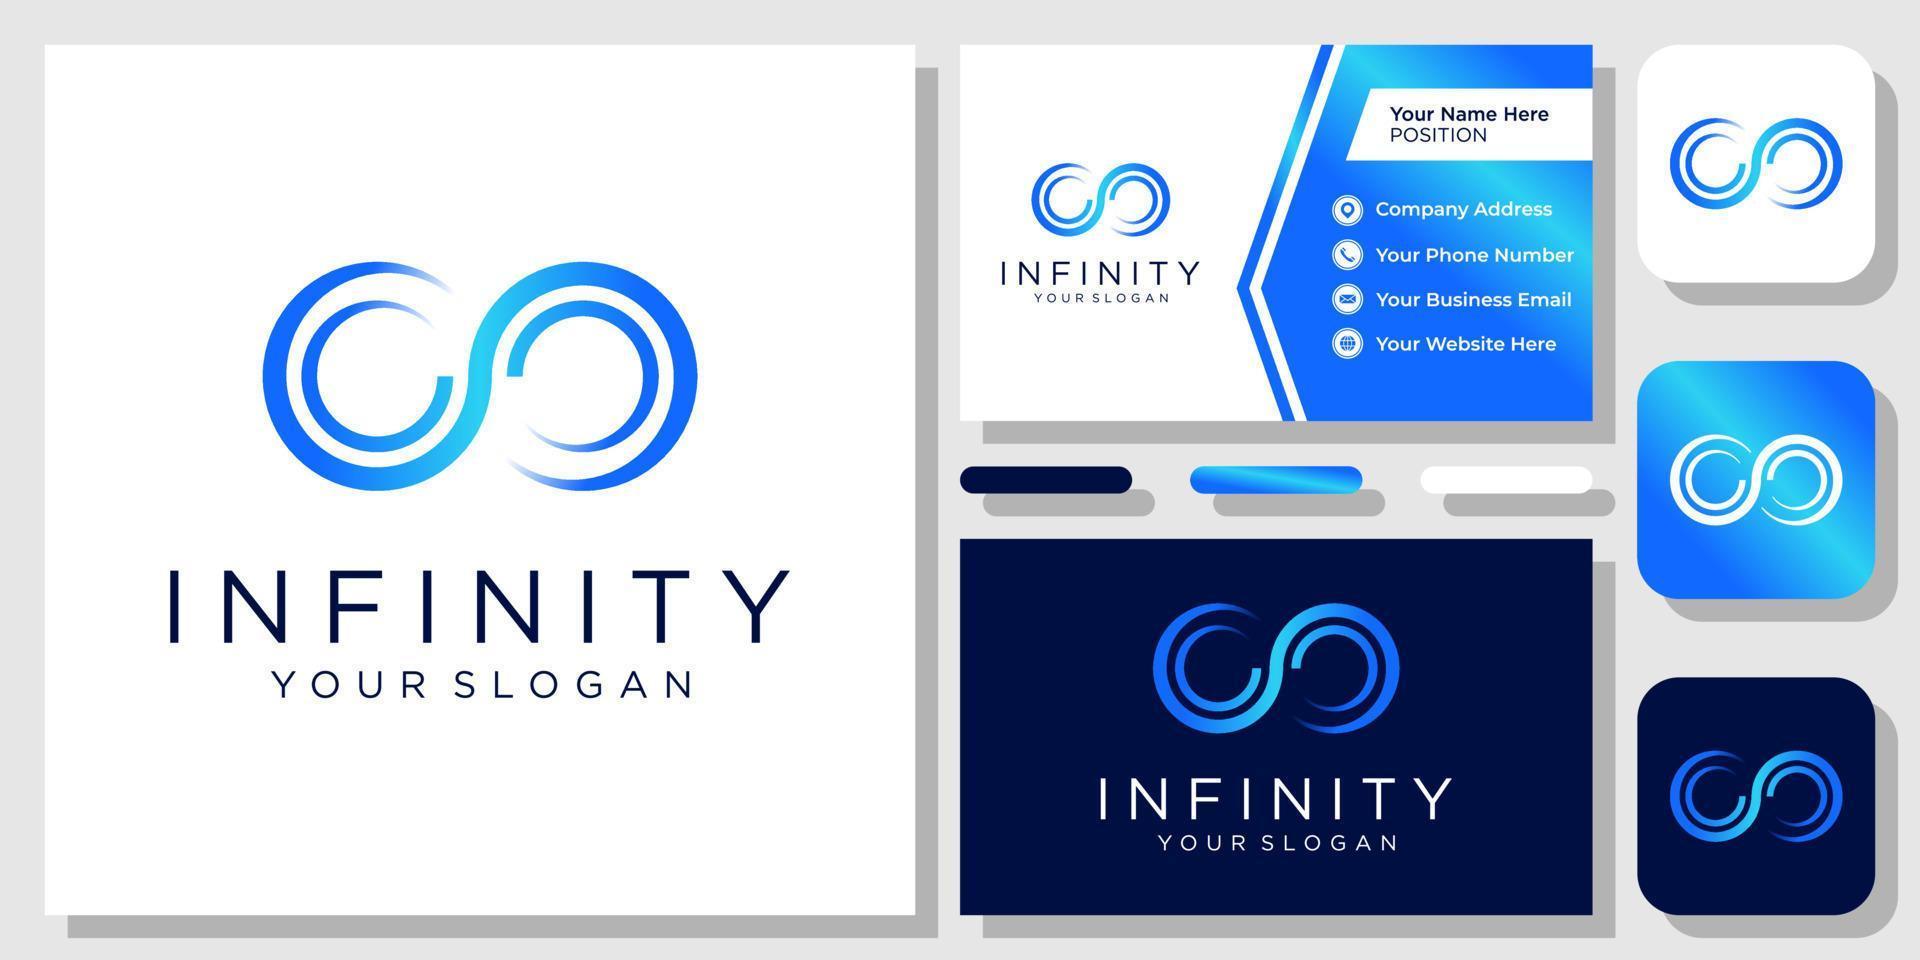 création de logo vectoriel créatif infini éternité infini coloré avec carte de visite